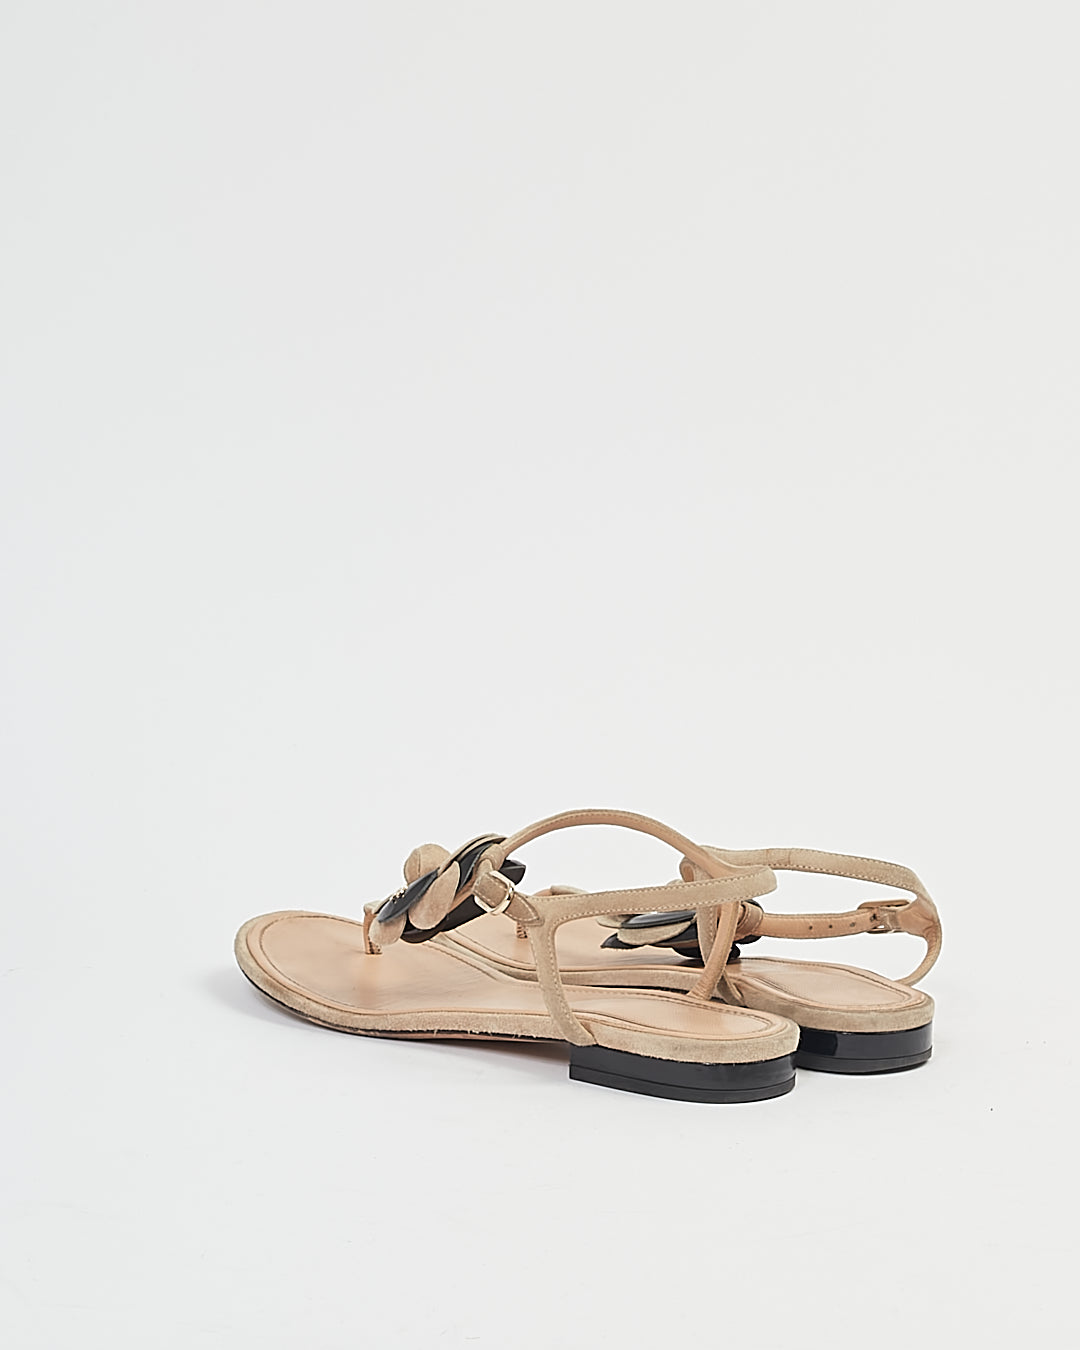 Sandales à fleurs de camélia beige/noir Chanel - 38,5